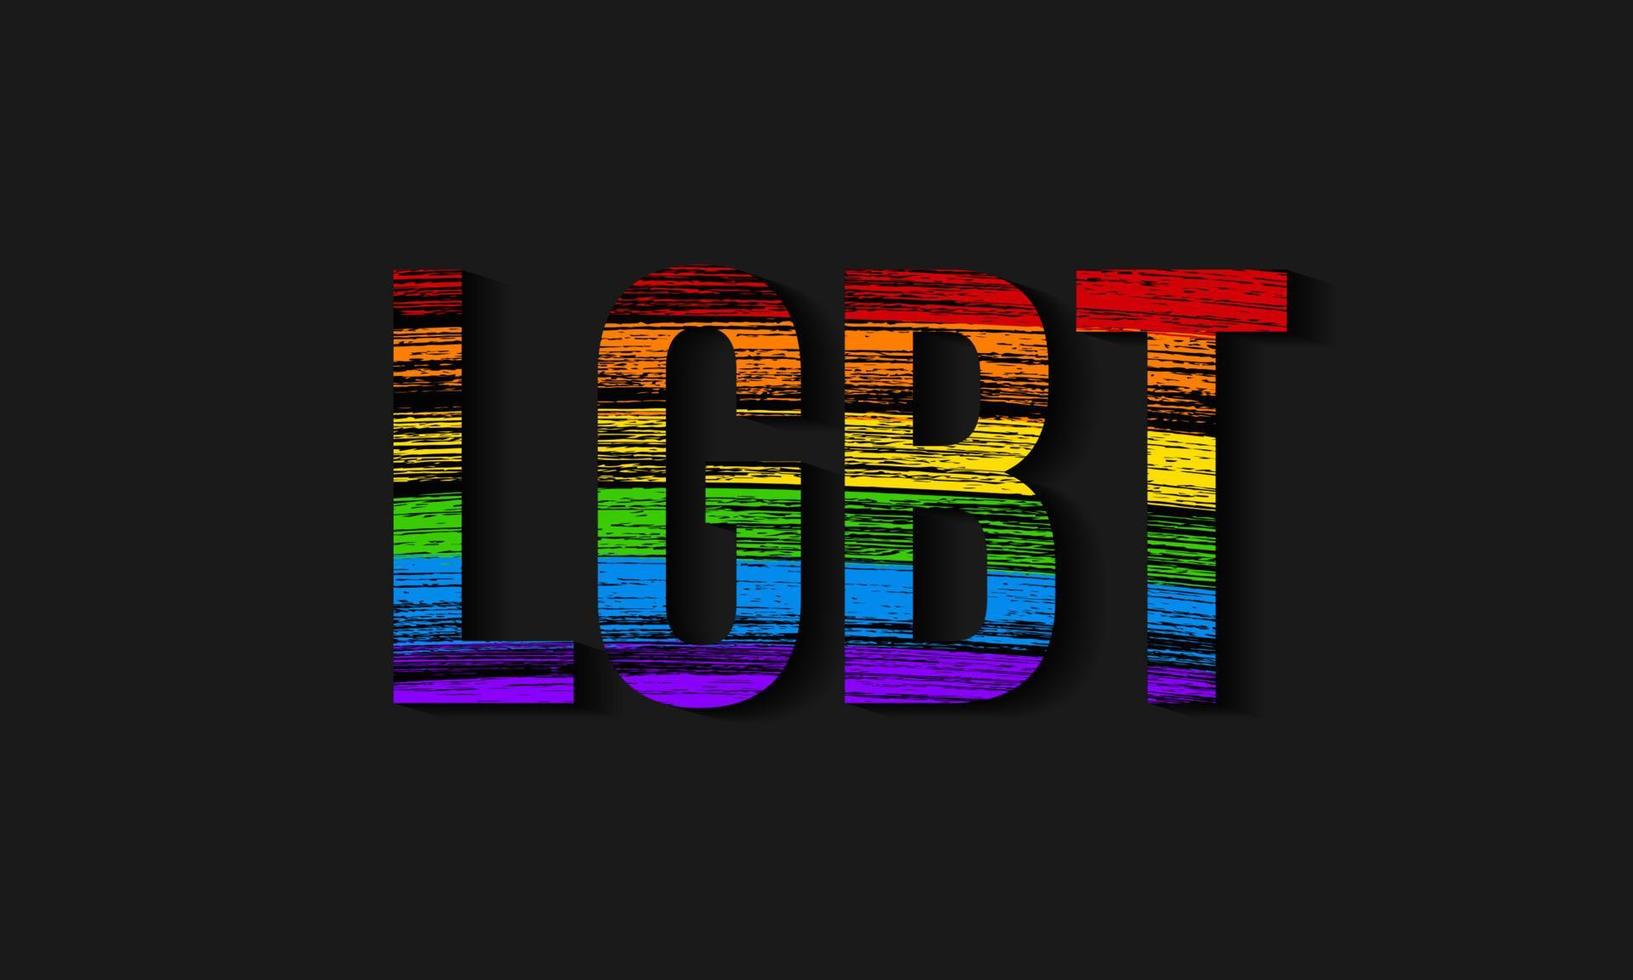 symbool van lesbische, gay pride, biseksuele, transgender sociale bewegingen. lgbt-gemeenschapsvlag. potloodstreken textuur de kleuren van de regenboog. gemakkelijk te bewerken vectorontwerpsjabloon. vector